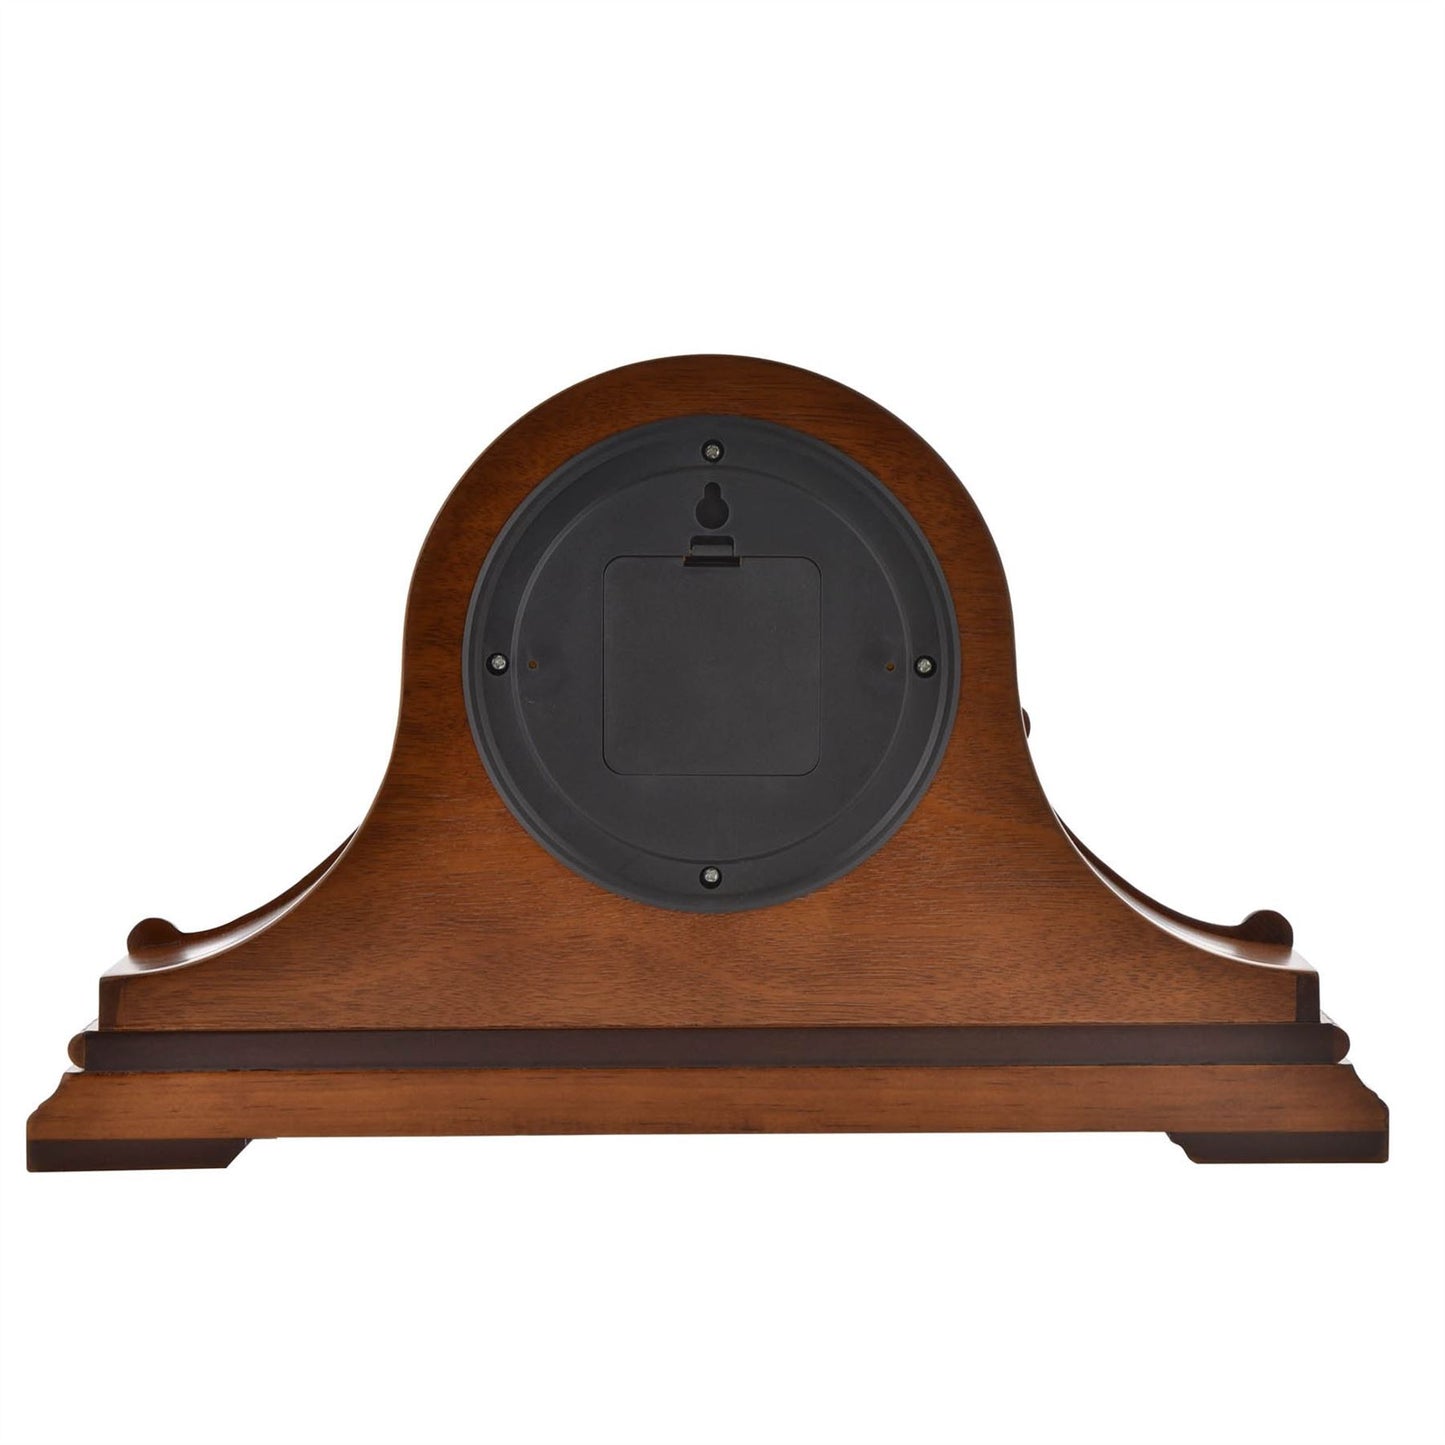 Wm.Widdop Wooden Napoleon Mantel Clock